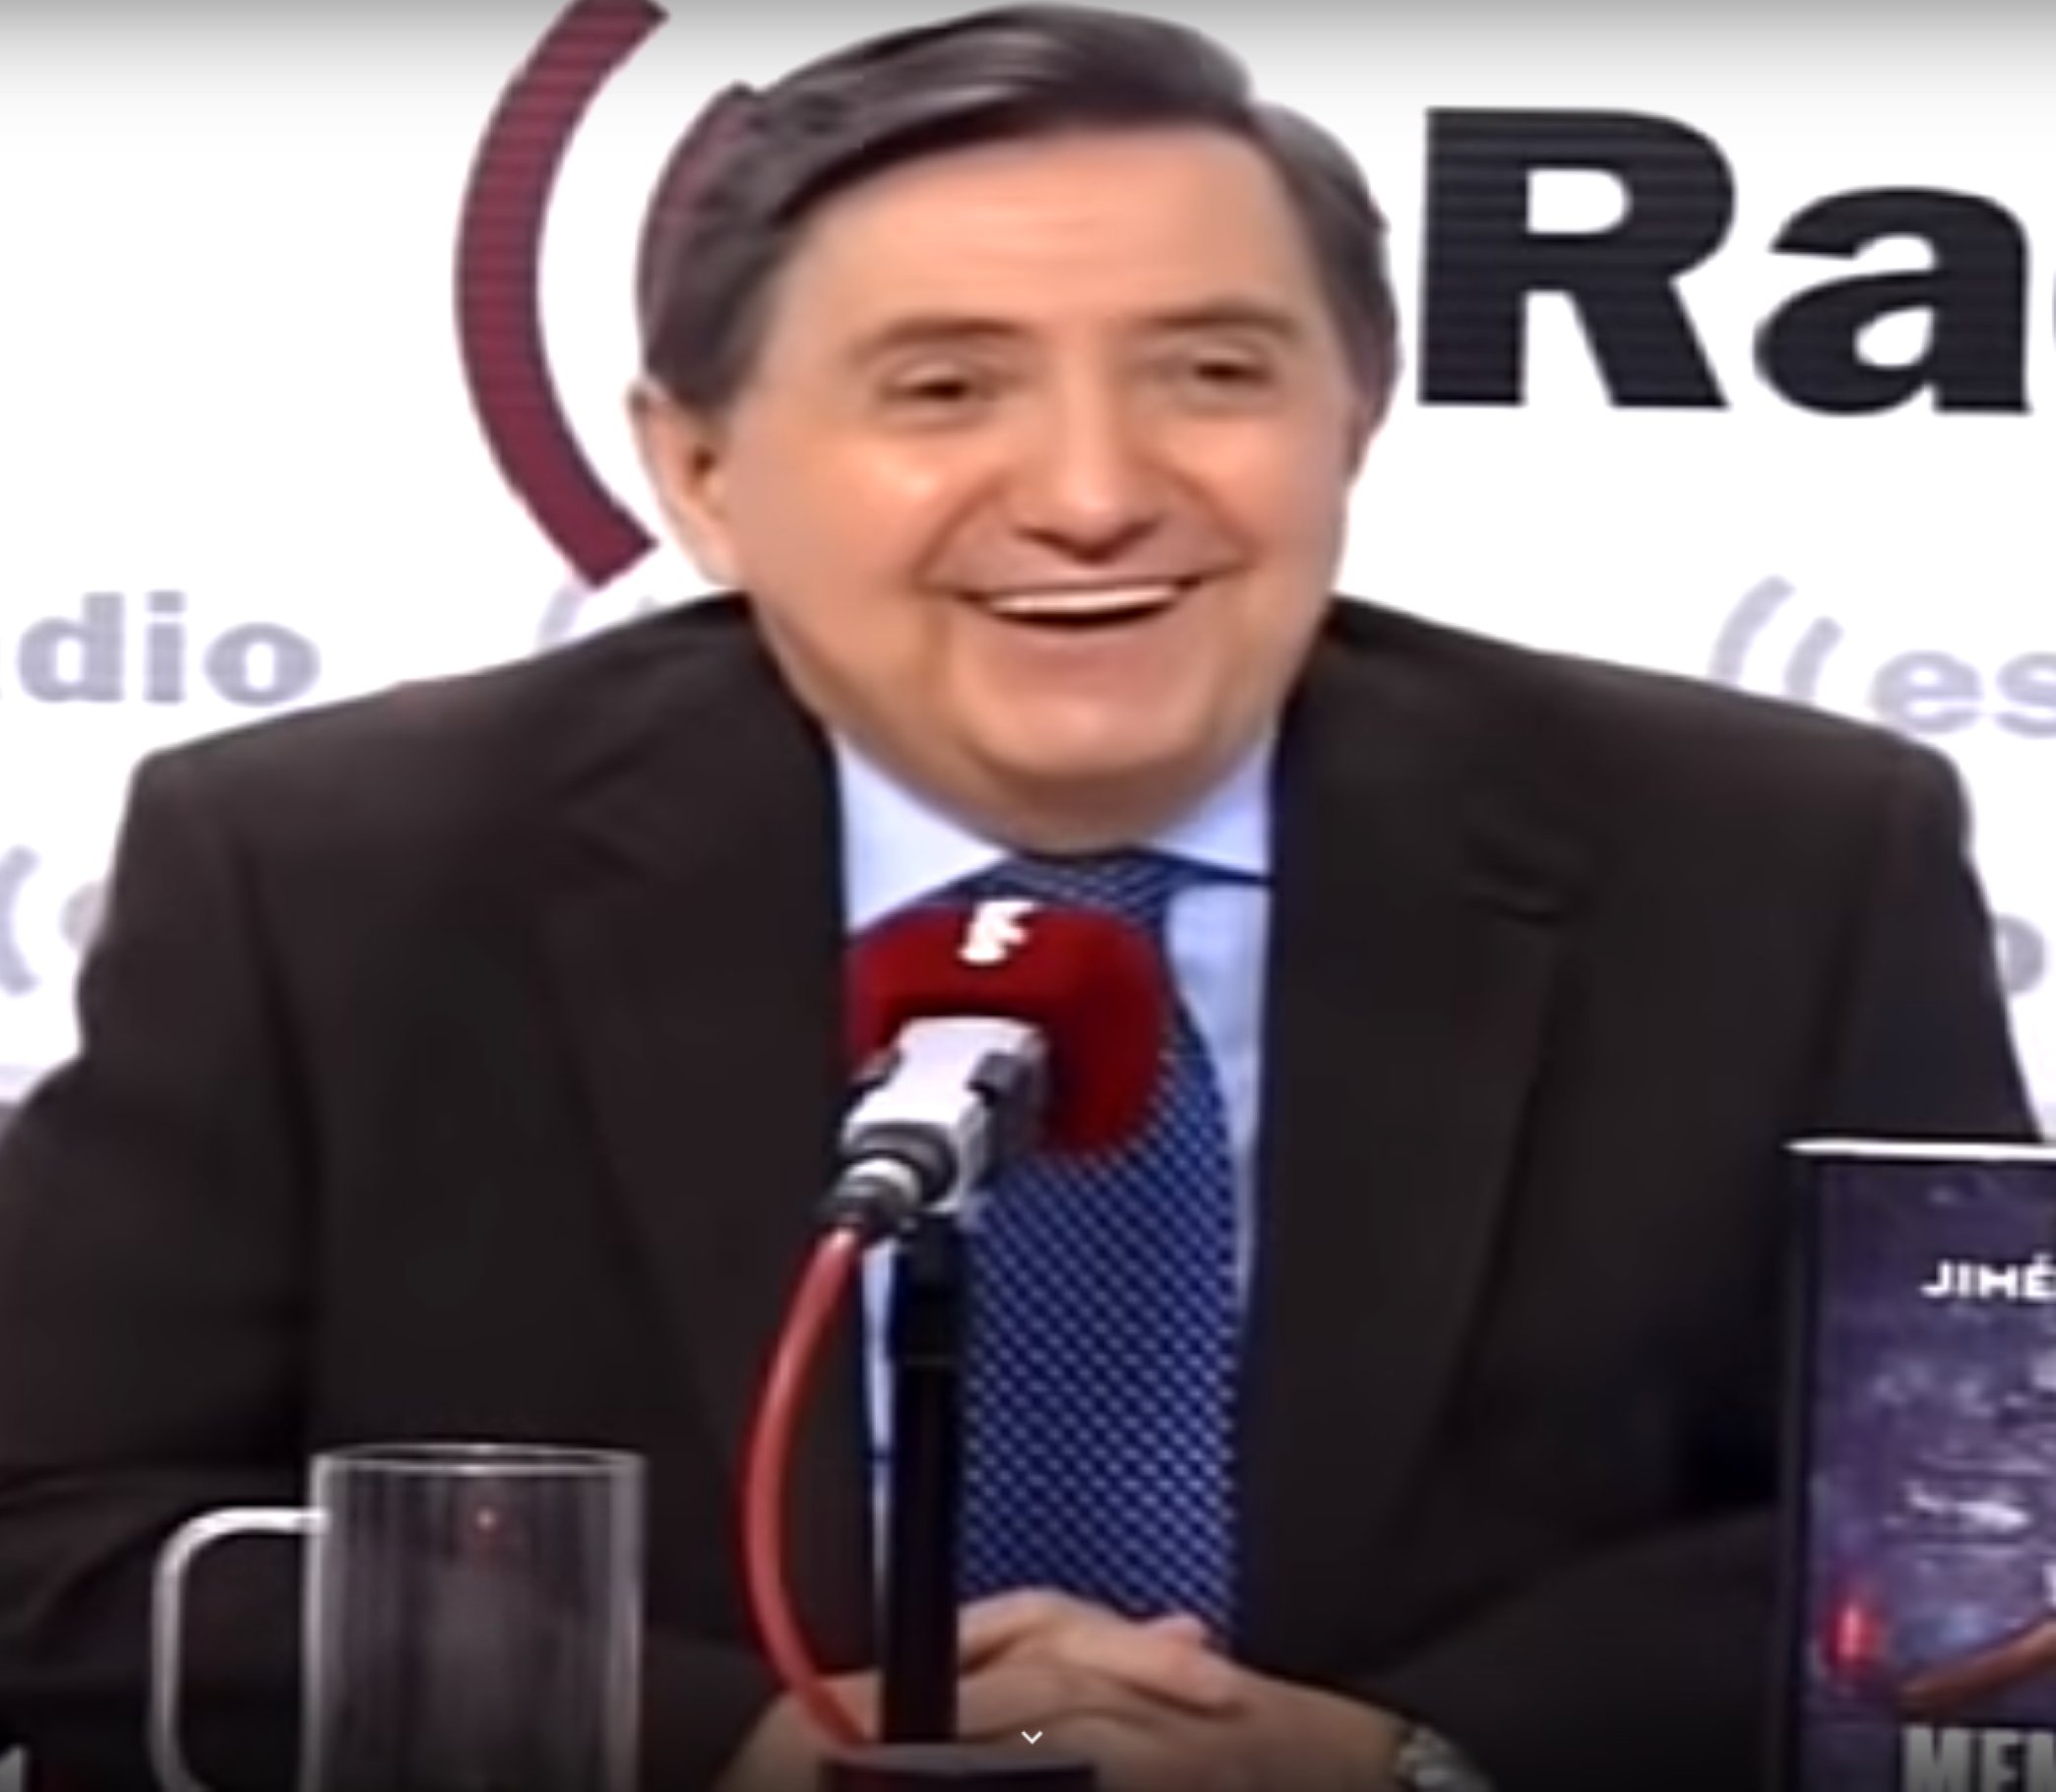 Jiménez Losantos ridiculitza un líder de VOX: "No te llega el riego al cerebro"